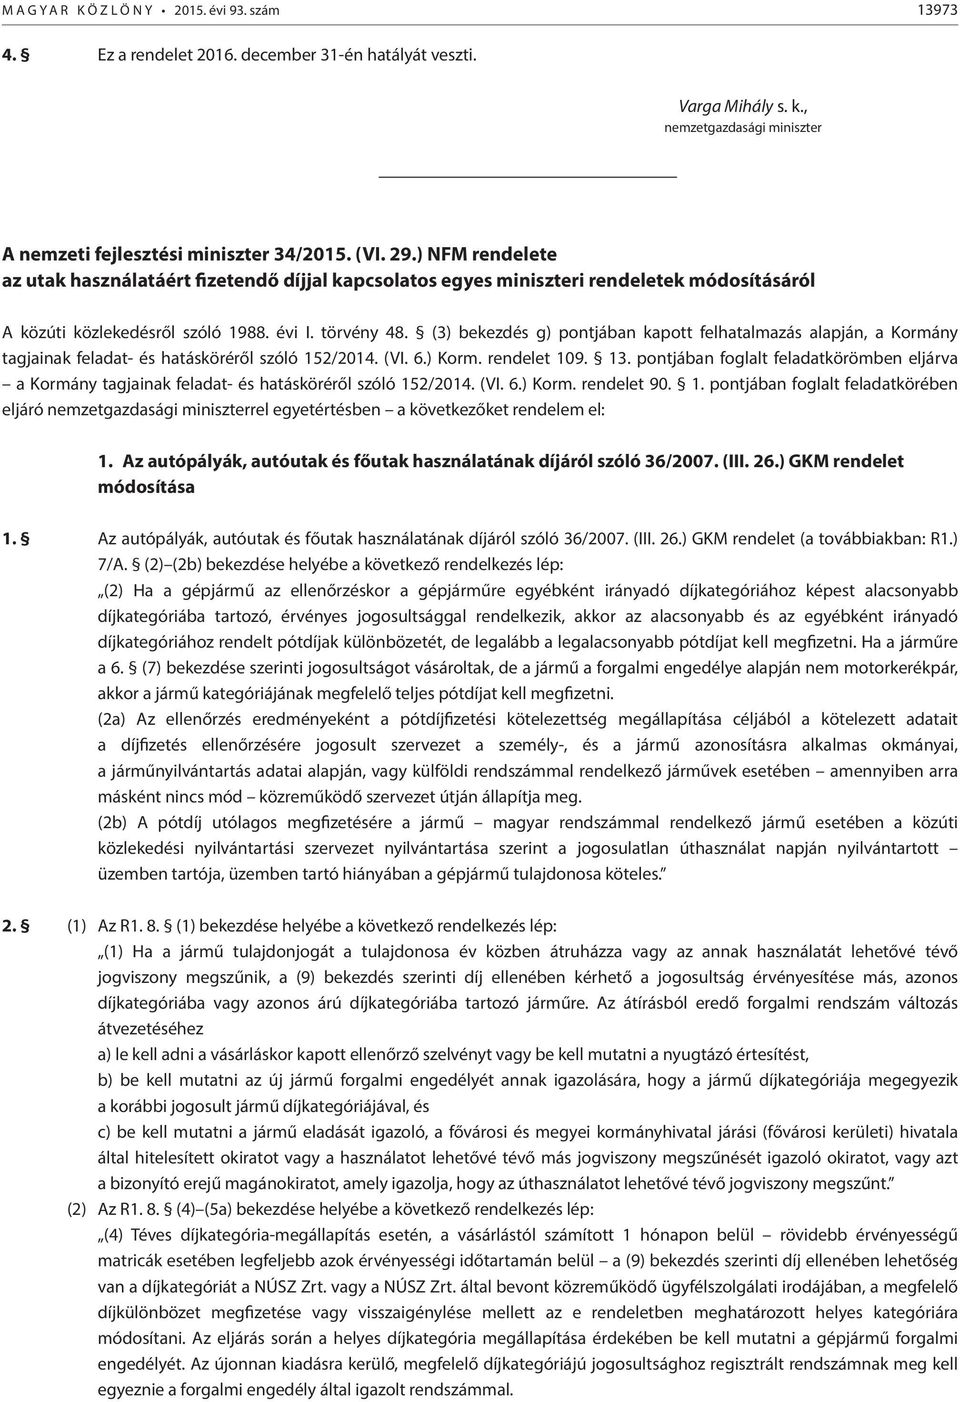 (3) bekezdés g) pontjában kapott felhatalmazás alapján, a Kormány tagjainak feladat- és hatásköréről szóló 152/2014. (VI. 6.) Korm. rendelet 109. 13.